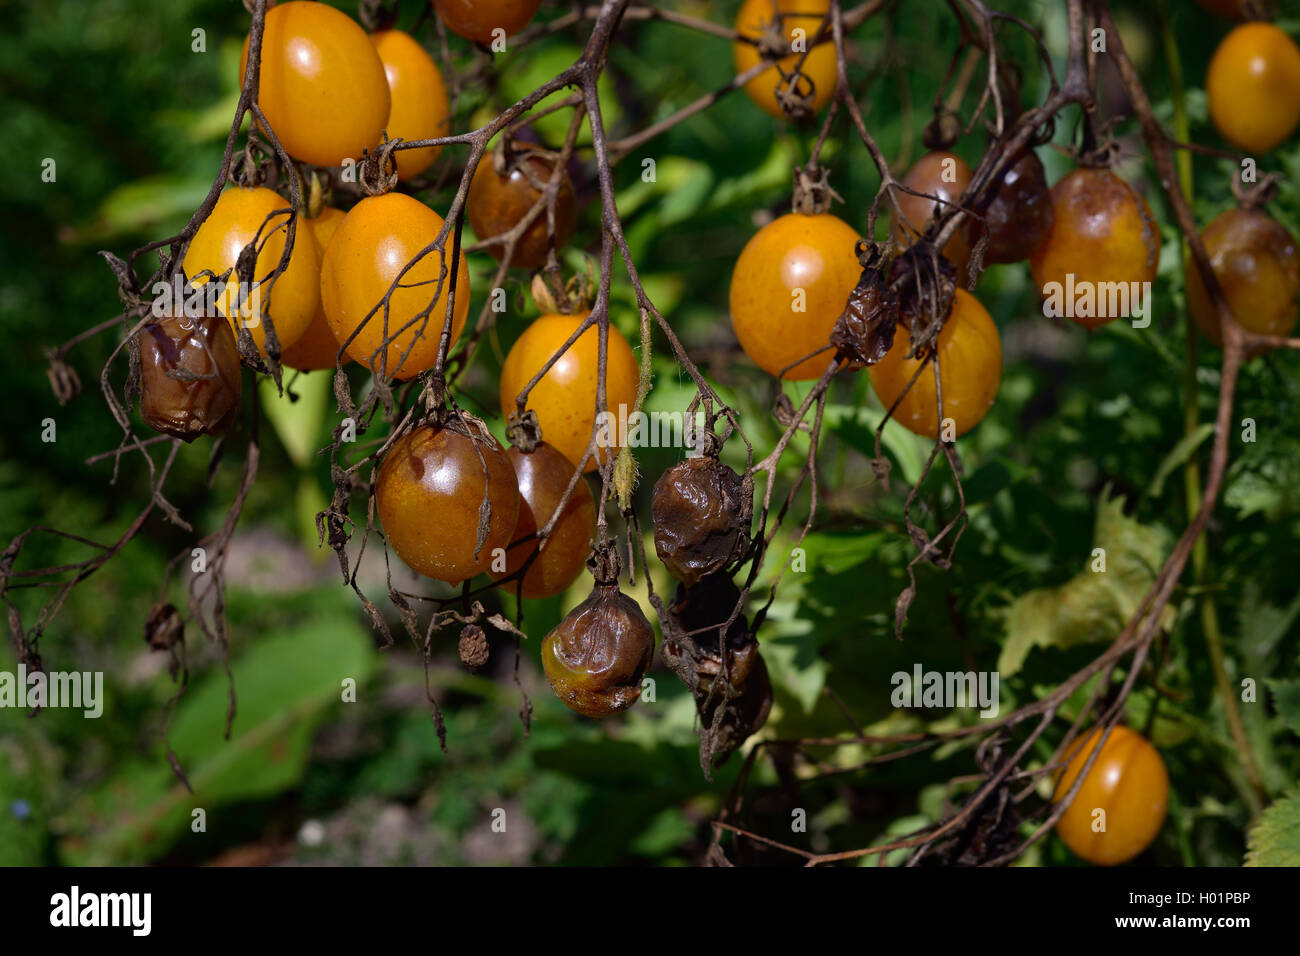 Maladies fongiques - tomate mildiou (Phytophthora infestans). Pourriture brune des tomates de plein air dans un jardin. Banque D'Images